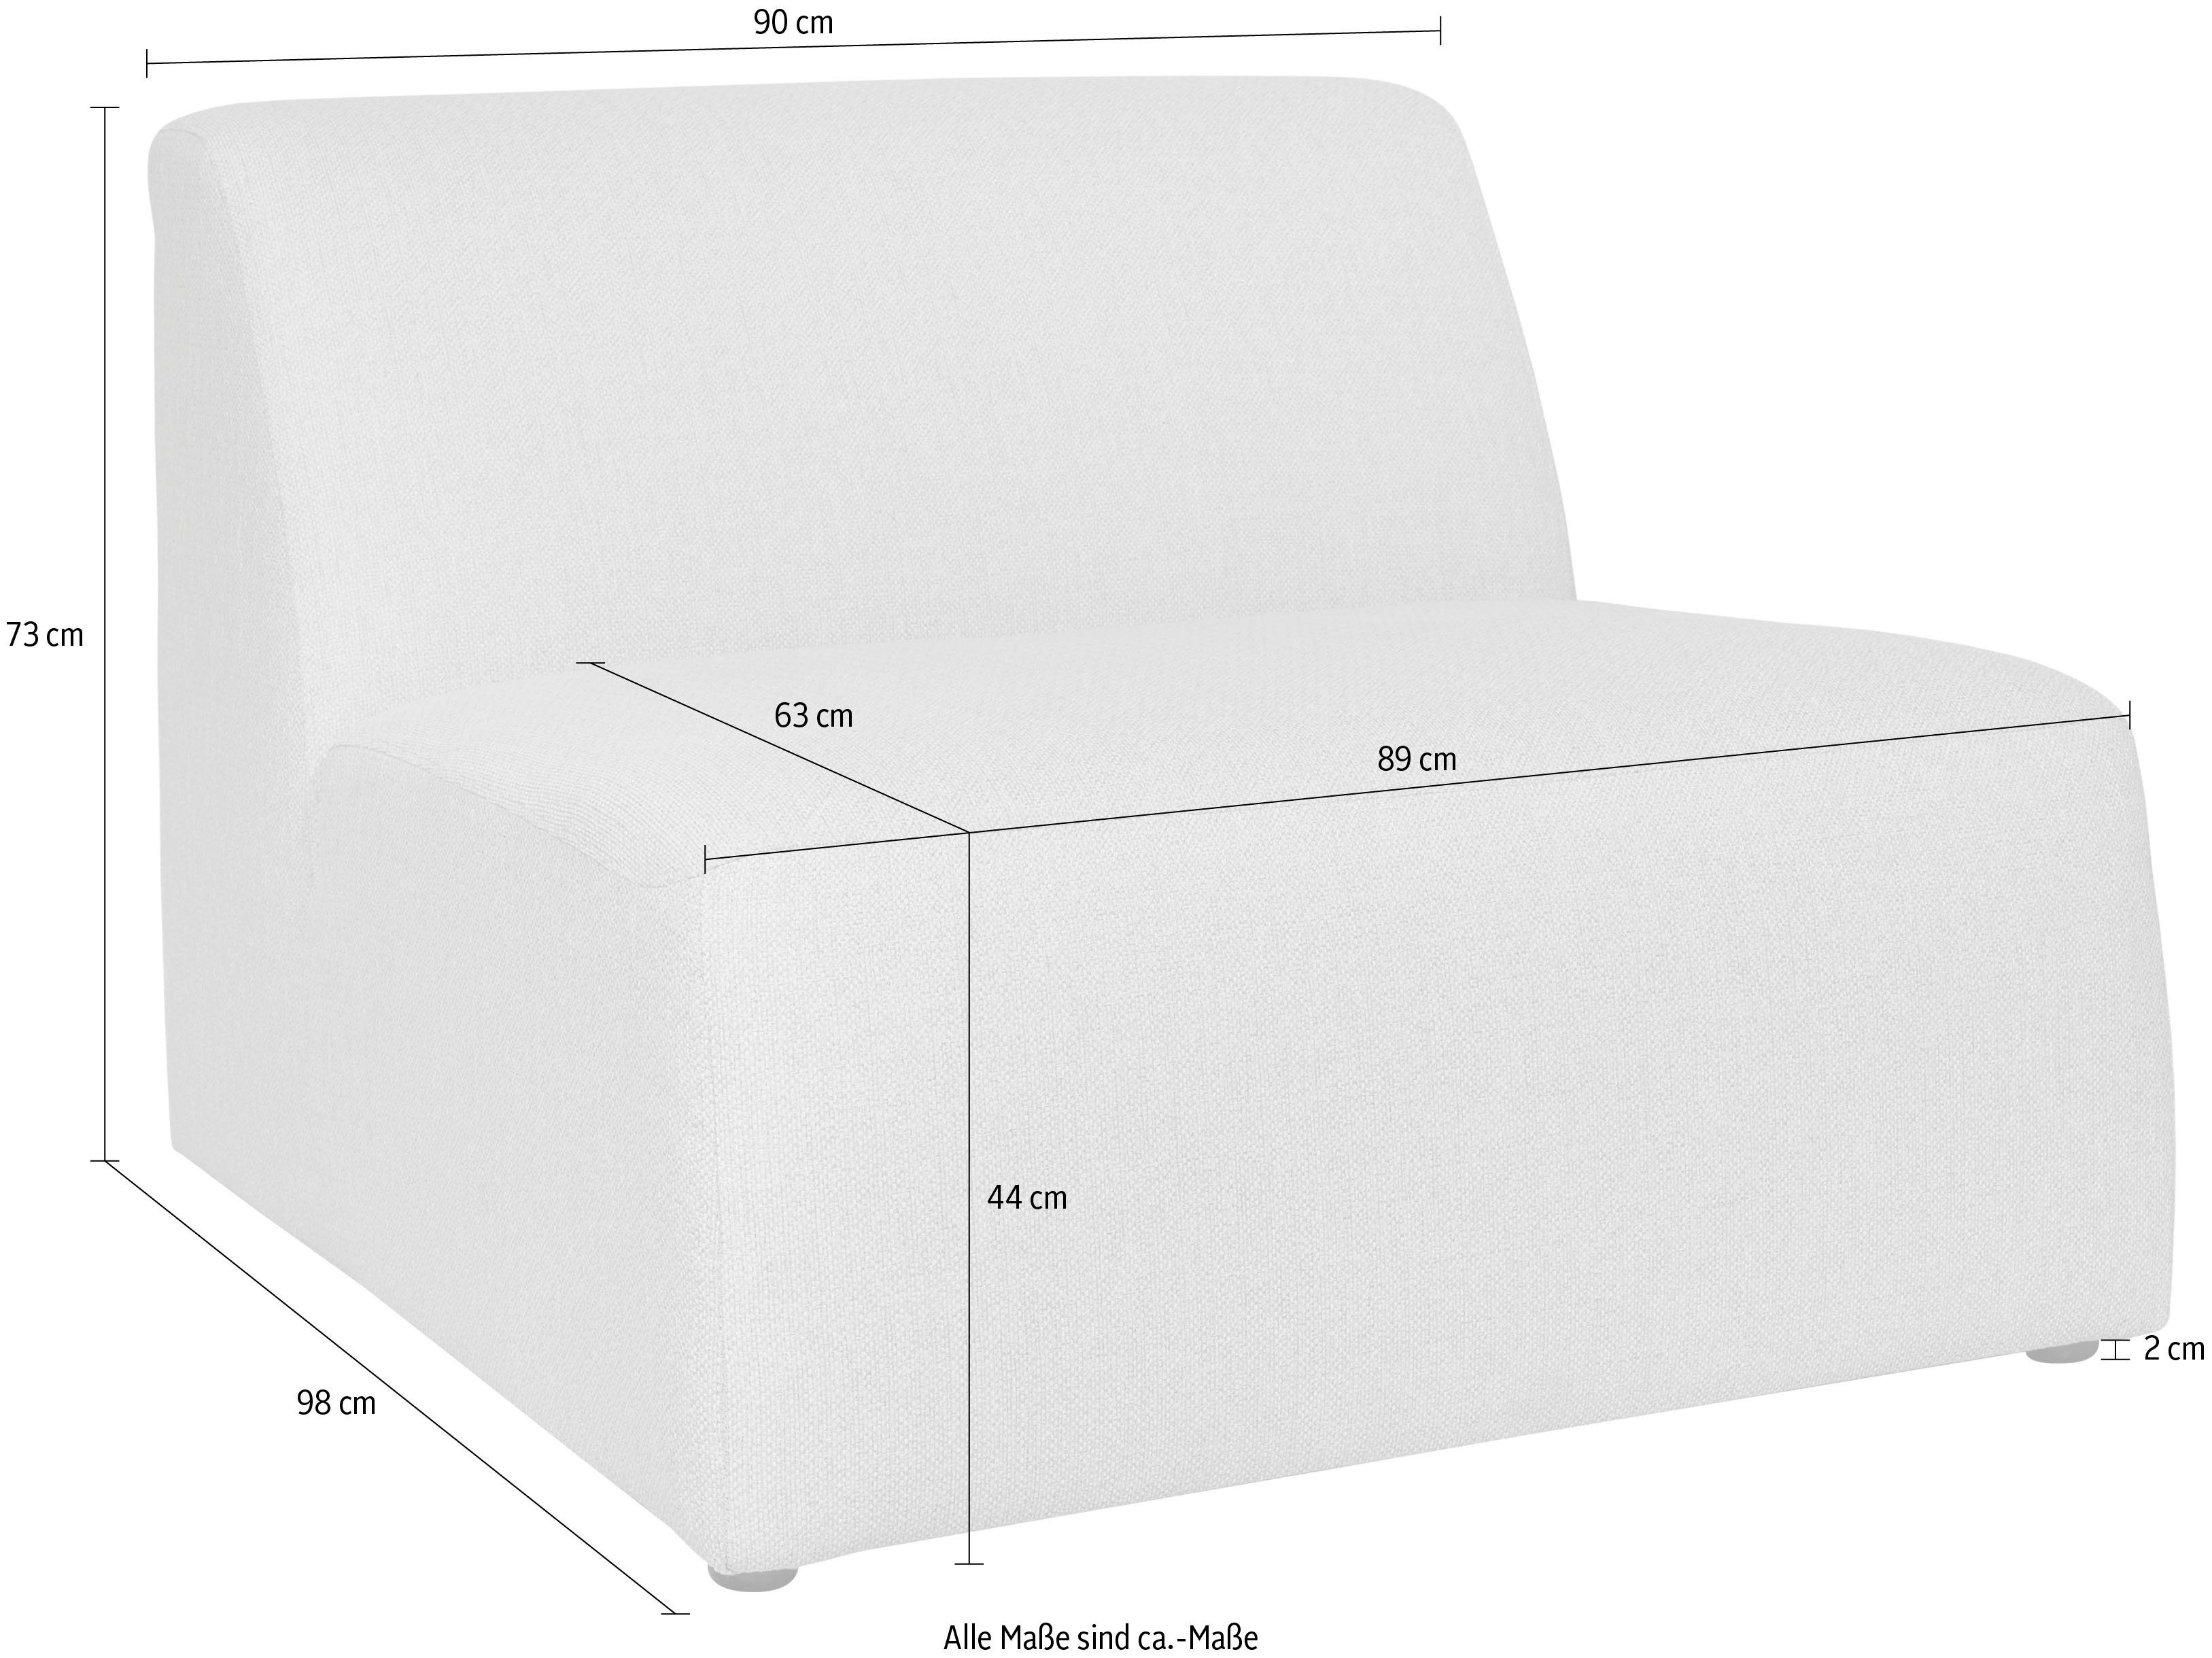 INOSIGN Sofa-Mittelelement Koa, Proportionen Komfort, grey warm schöne angenehmer